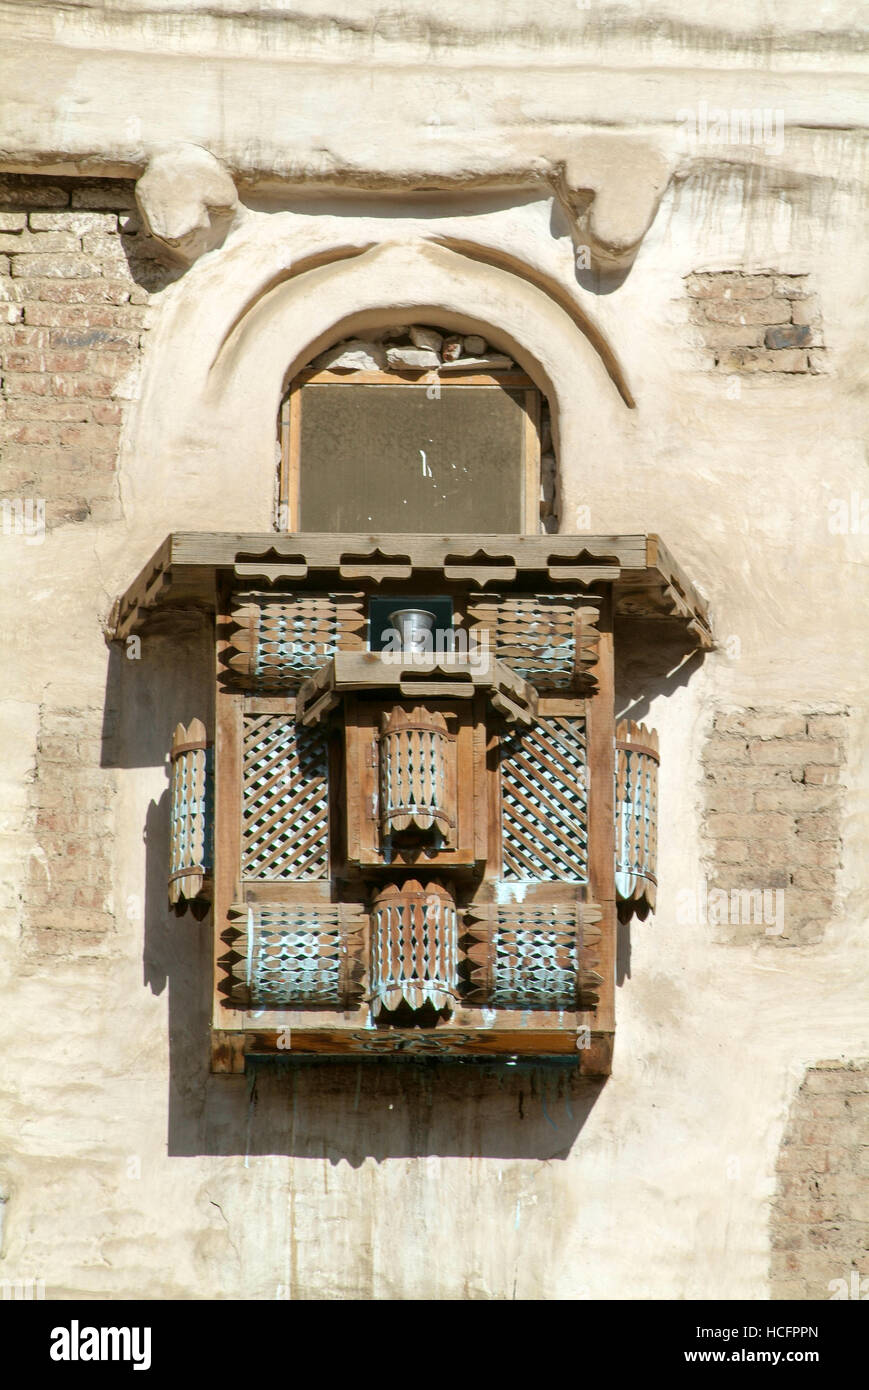 In legno a traliccio di un balcone enclosure in un tradizionale edificio arabo della vecchia Sana nello Yemen Foto Stock